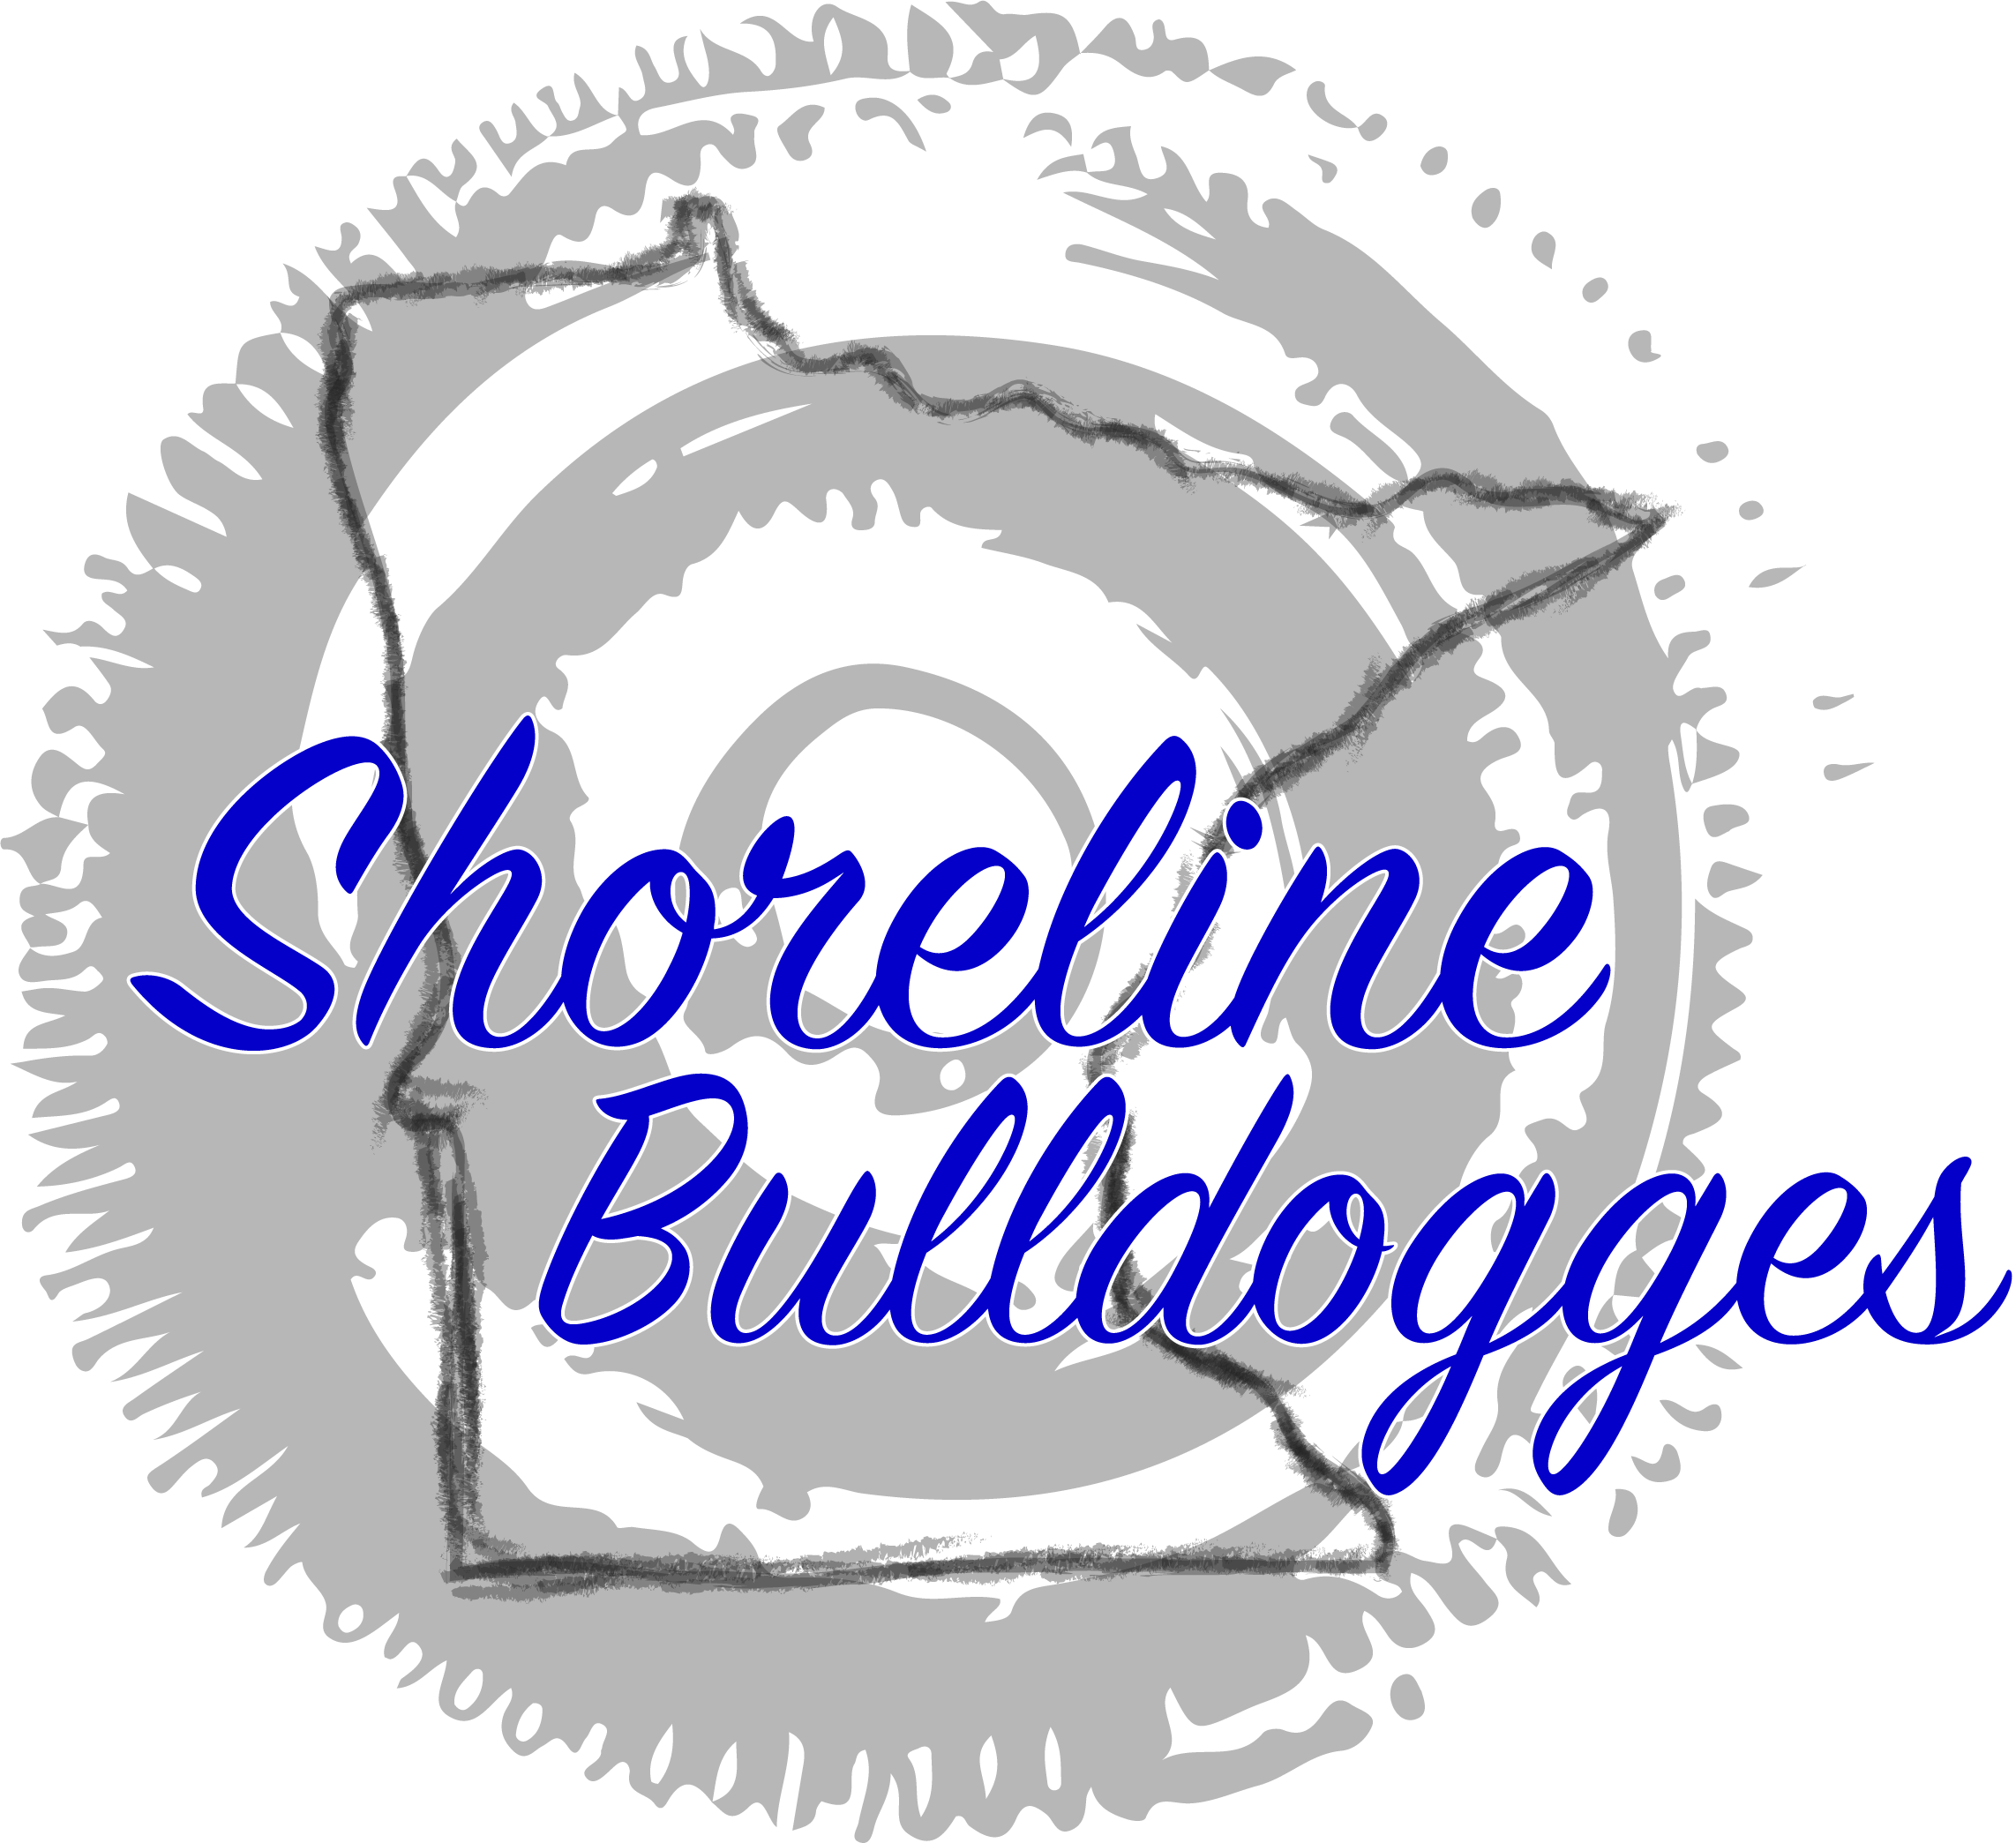 Shoreline Bulldogges